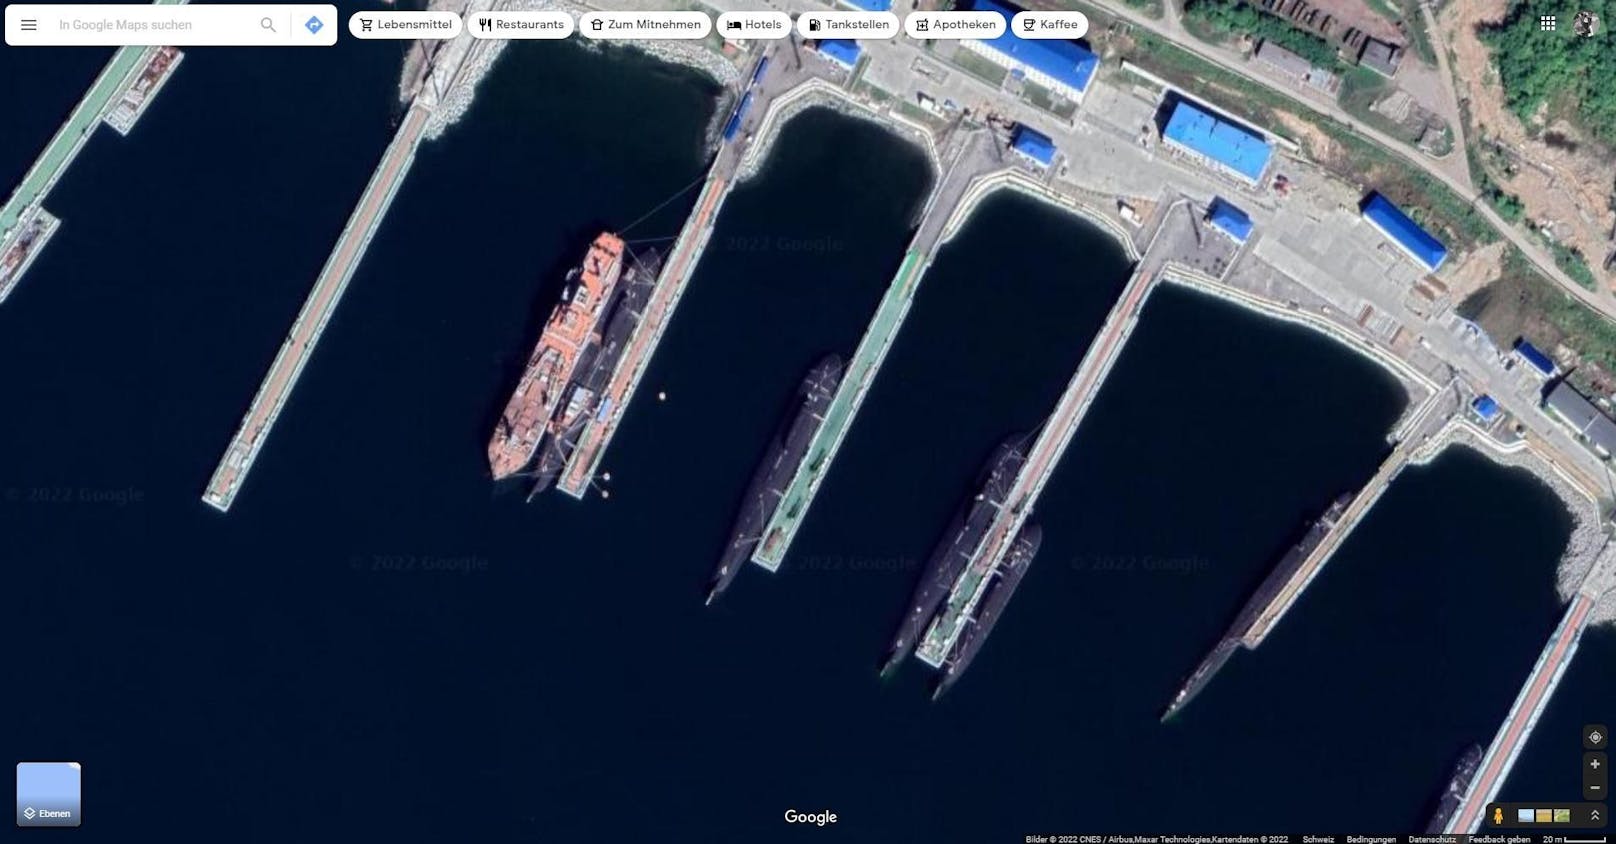 Solche Bilder kursieren derzeit auf sozialen Medien. Hier zu sehen ist ein russischer Militärstützpunkt mit mehreren U-Booten. Diese ankern ganz im Osten von Russland, in Wiljutschinsk in der Region Kamtschatka.